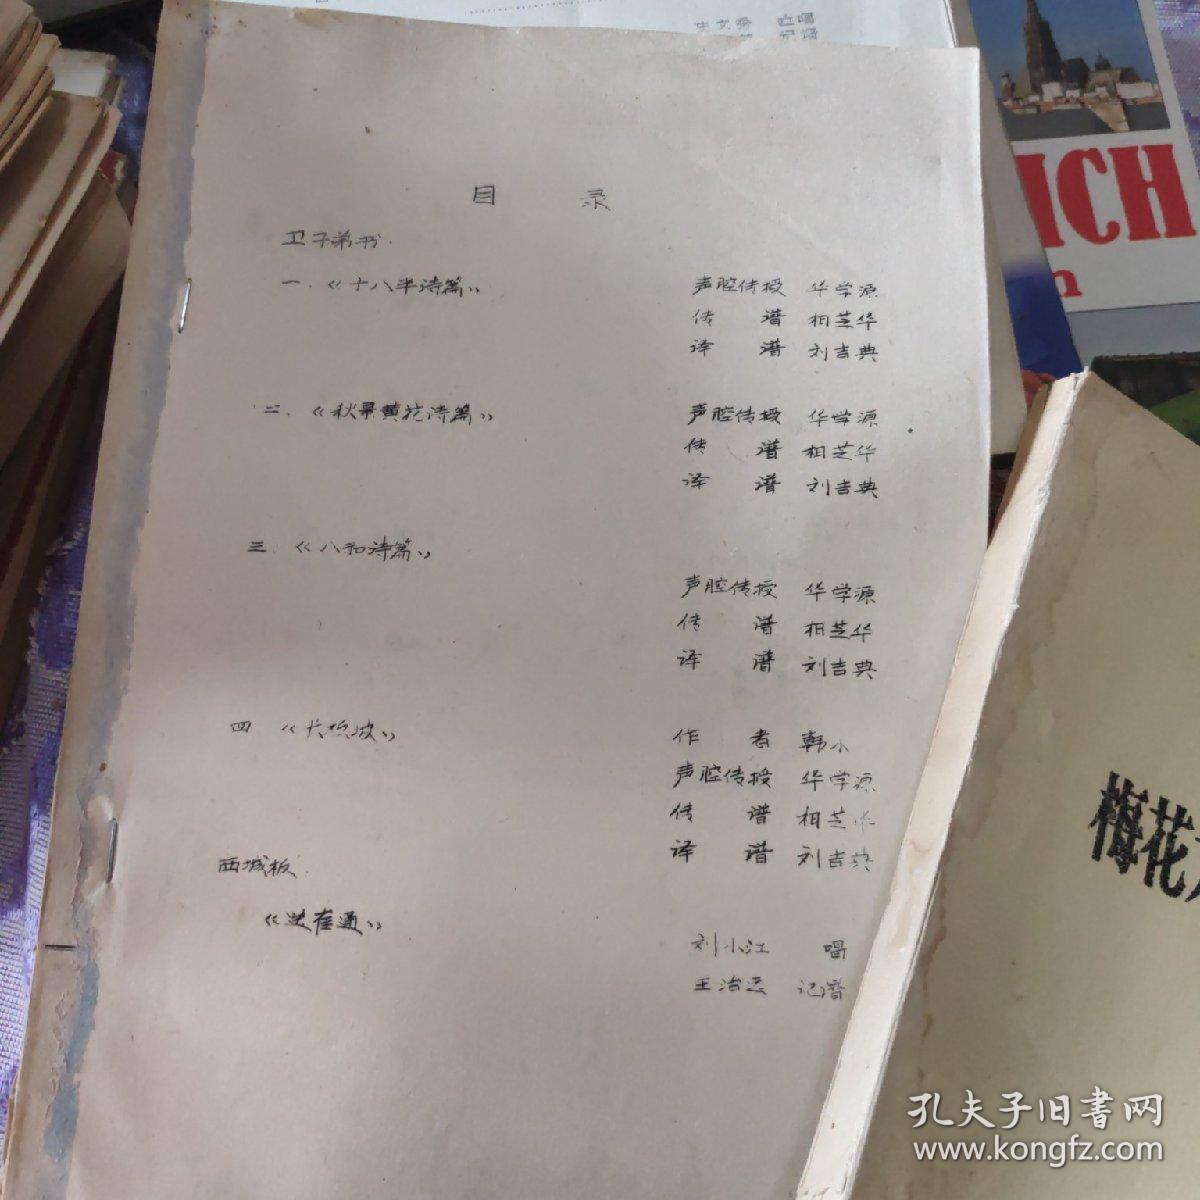 中国曲艺音乐集成天津卷   三本两本没皮的